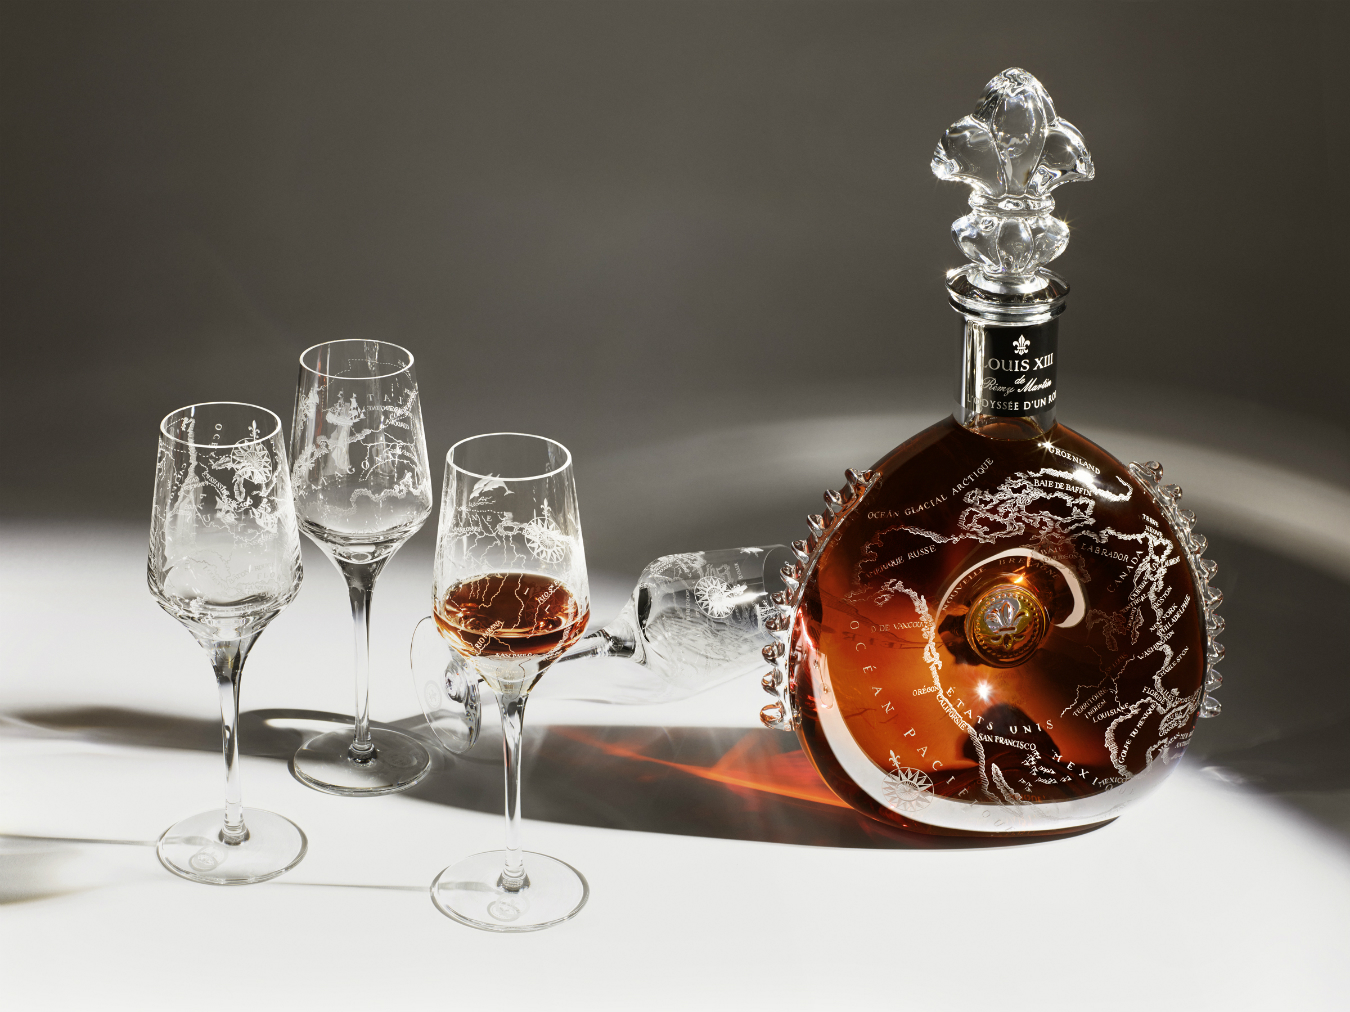 L'odyssée D'un Roi: Rarest Louis XIII Cognac In The World